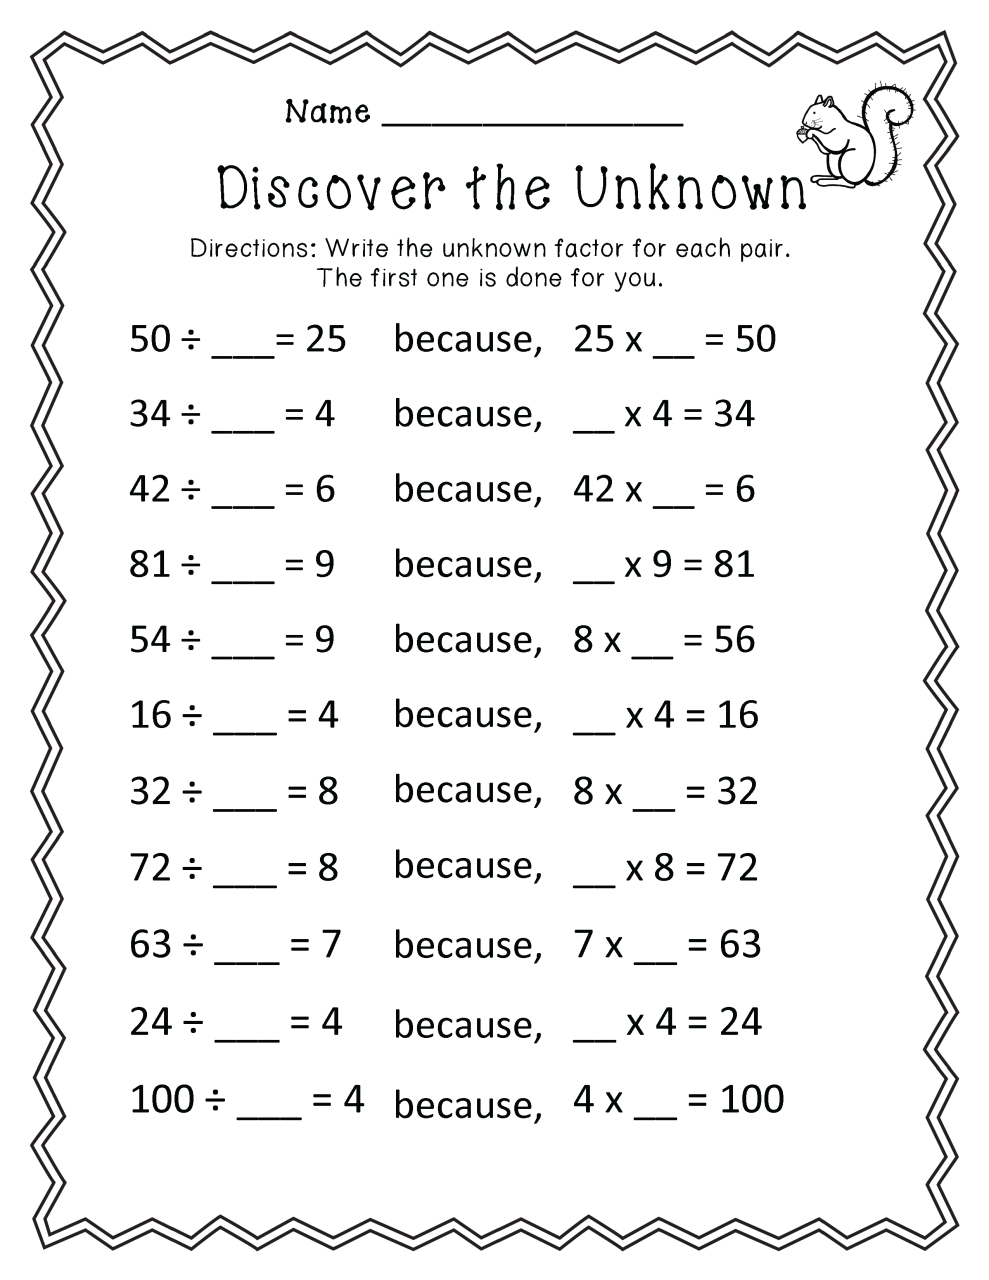 fun-math-worksheets-3rd-grade-kidsworksheetfun